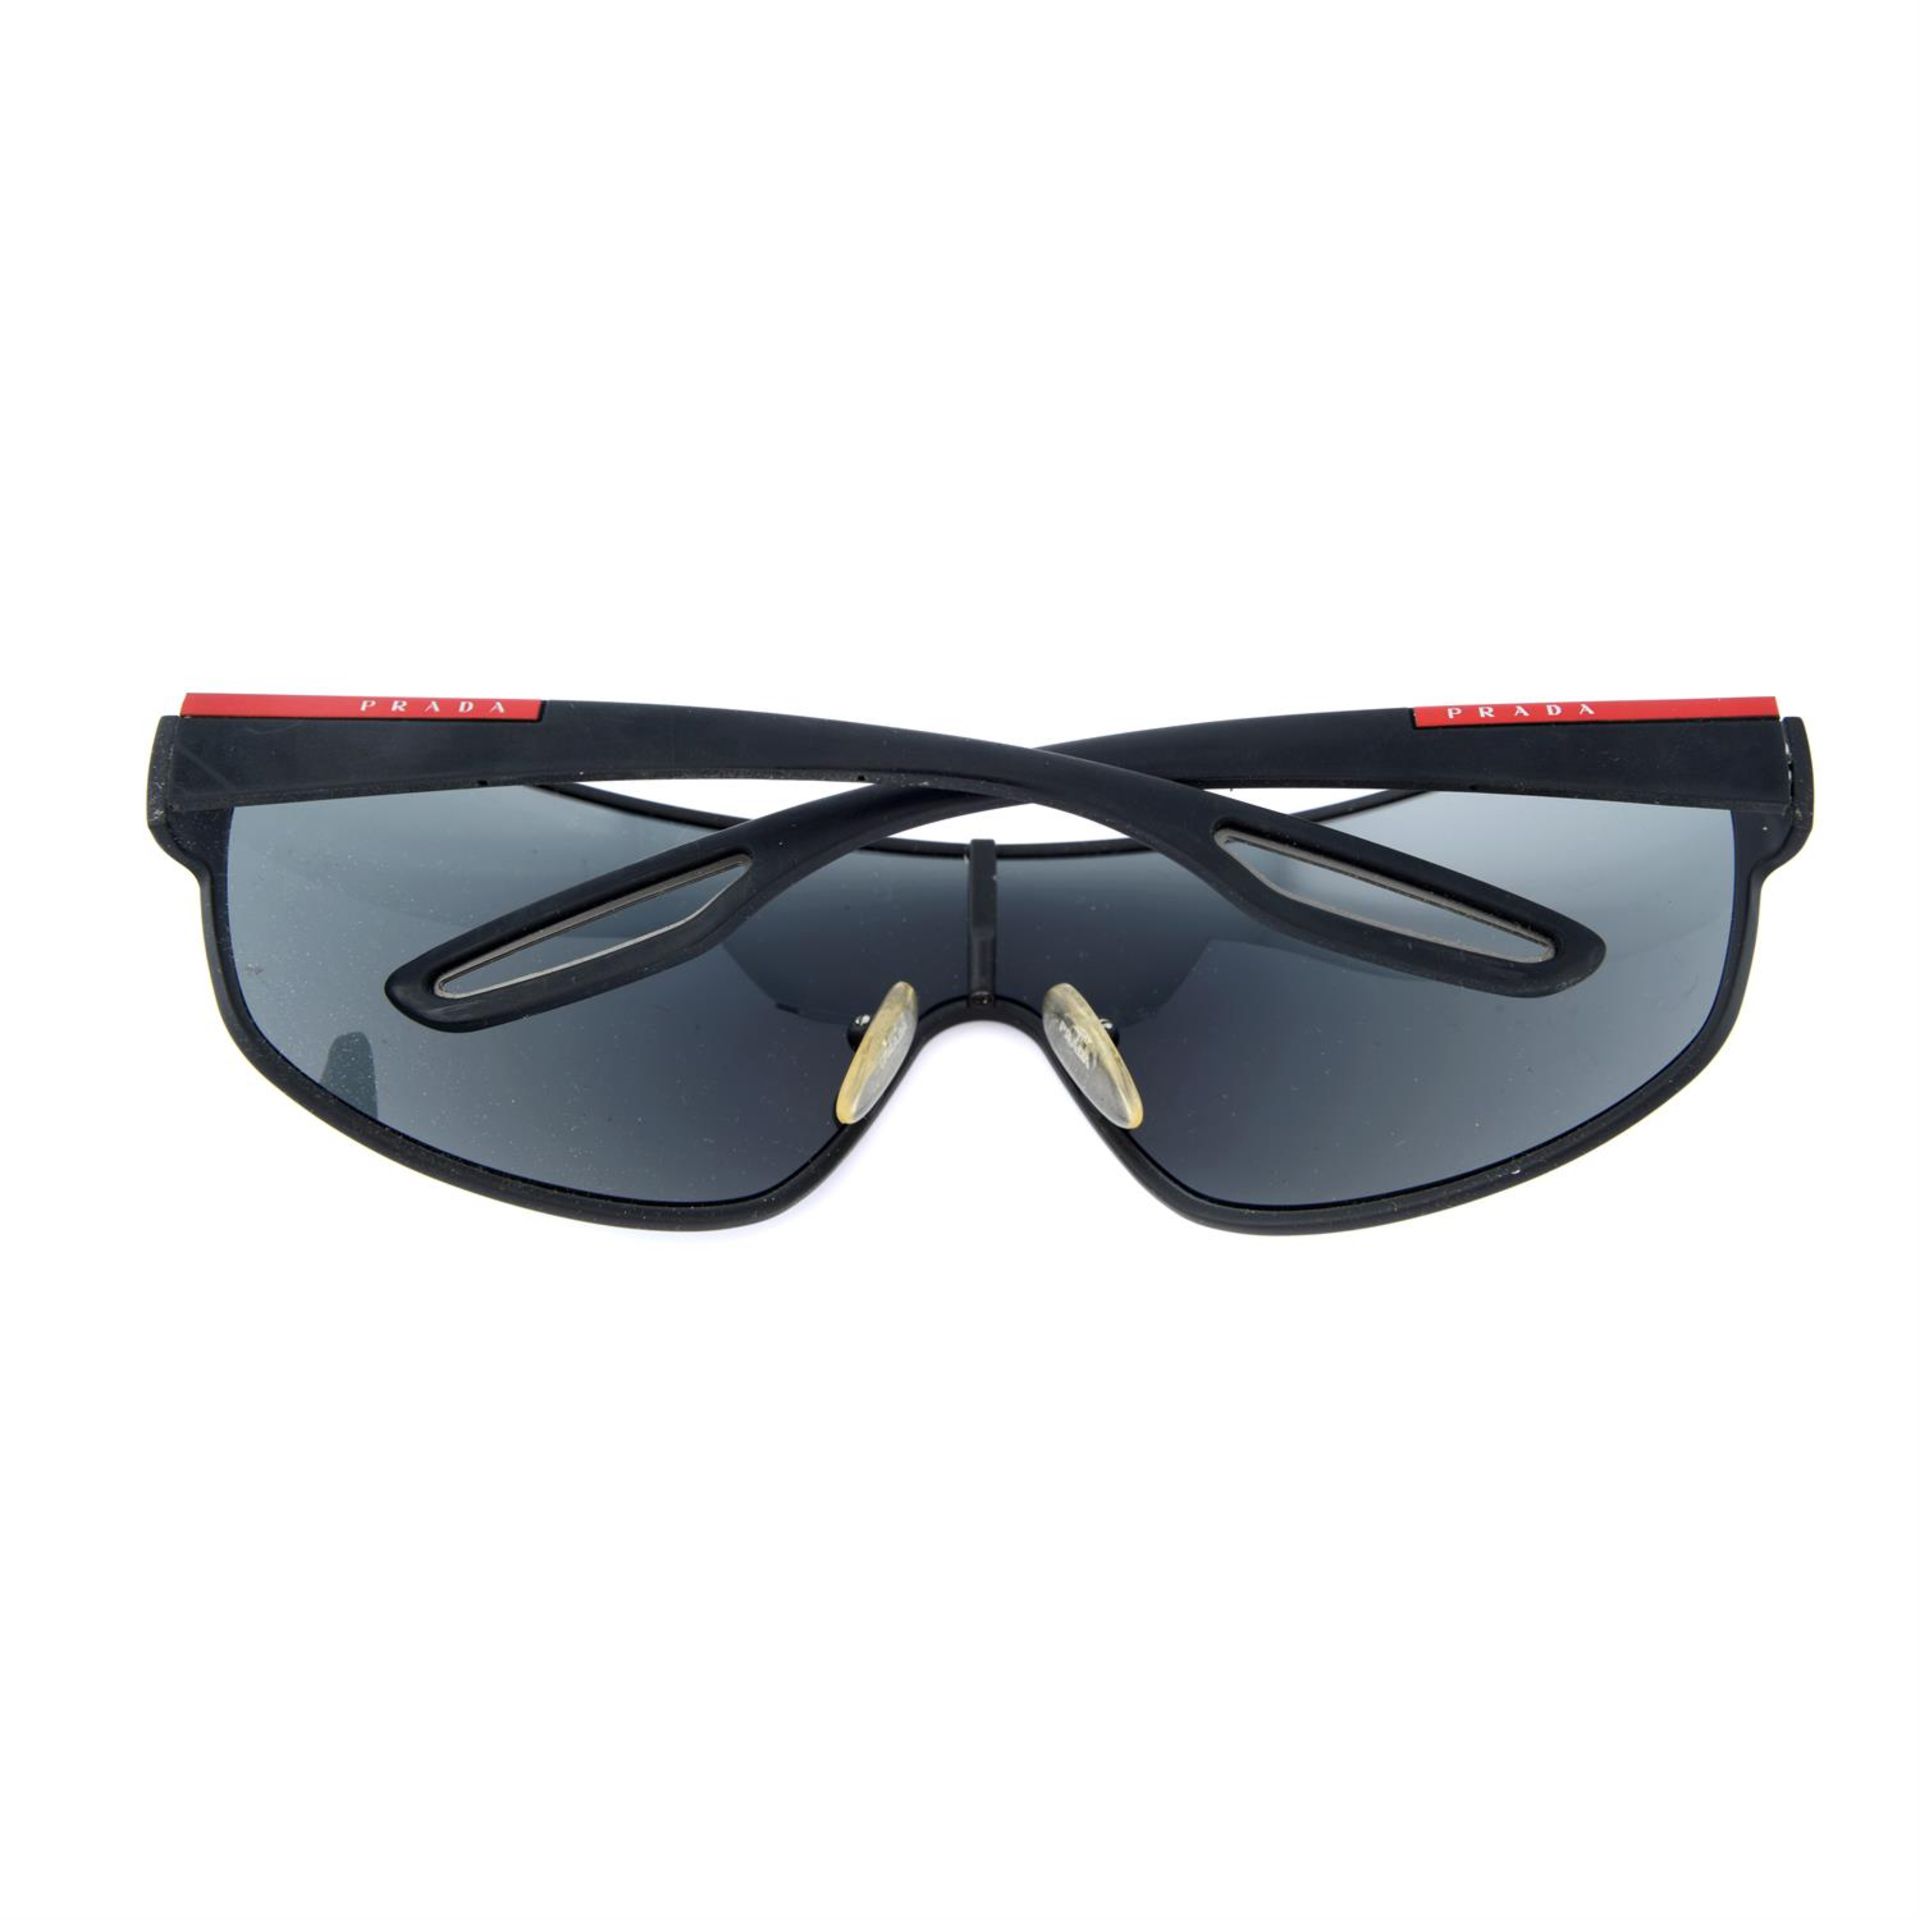 PRADA - a pair of Linea Rossa sunglasses. - Image 2 of 4